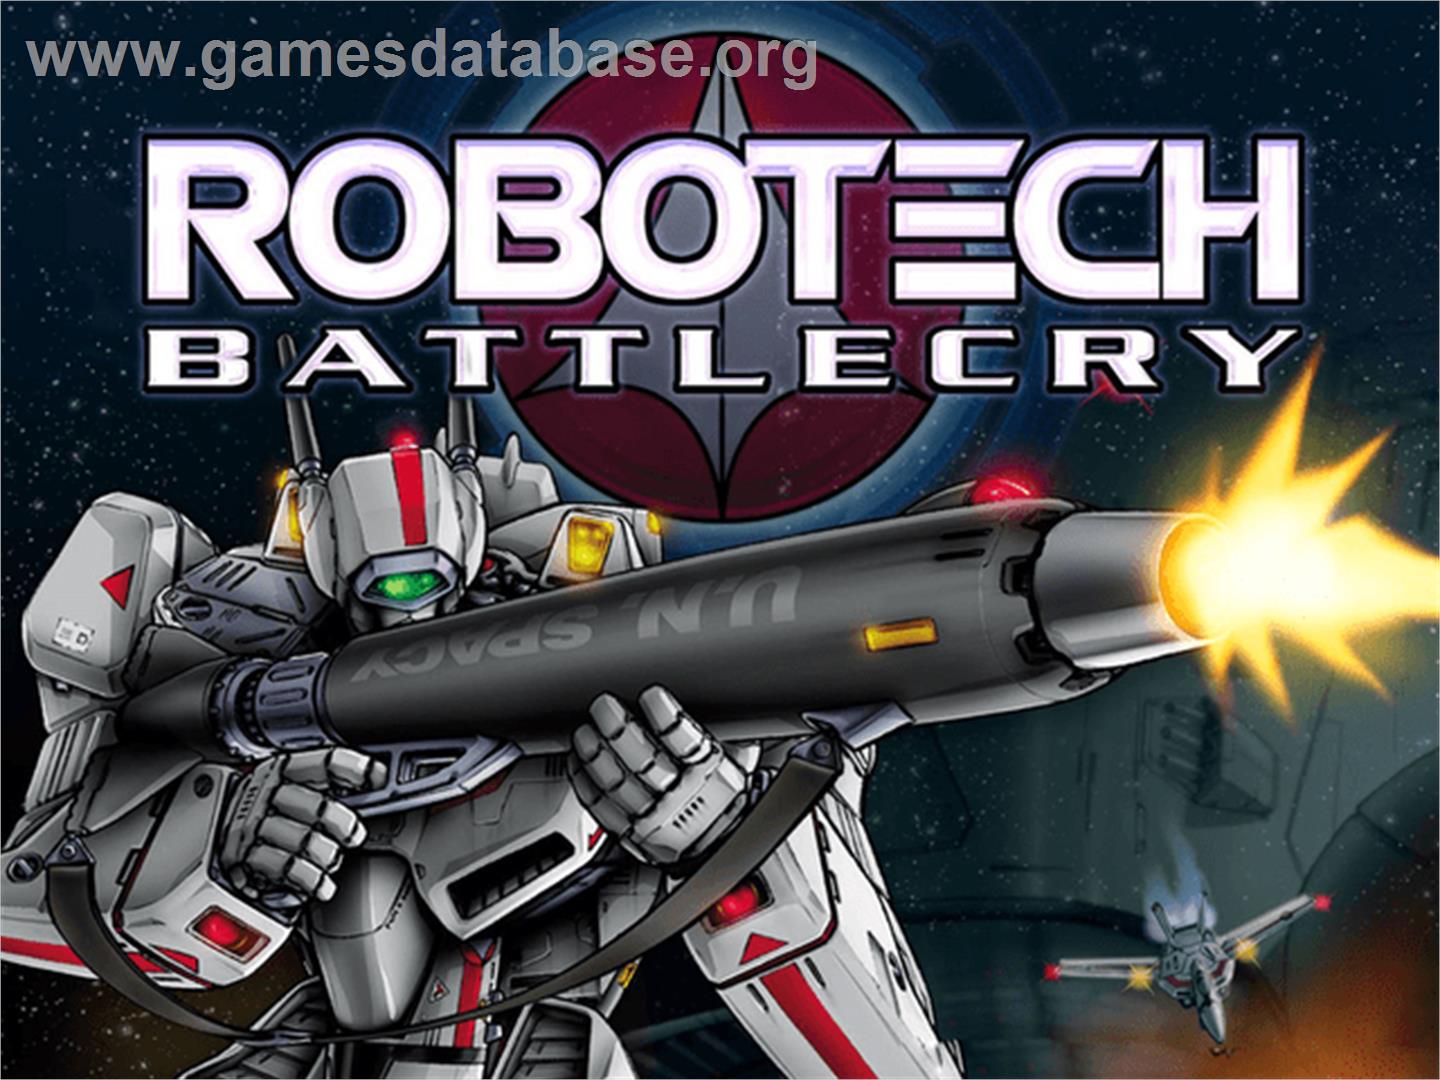 Robotech: Battlecry (Collector's Edition) - Microsoft Xbox - Artwork - Title Screen